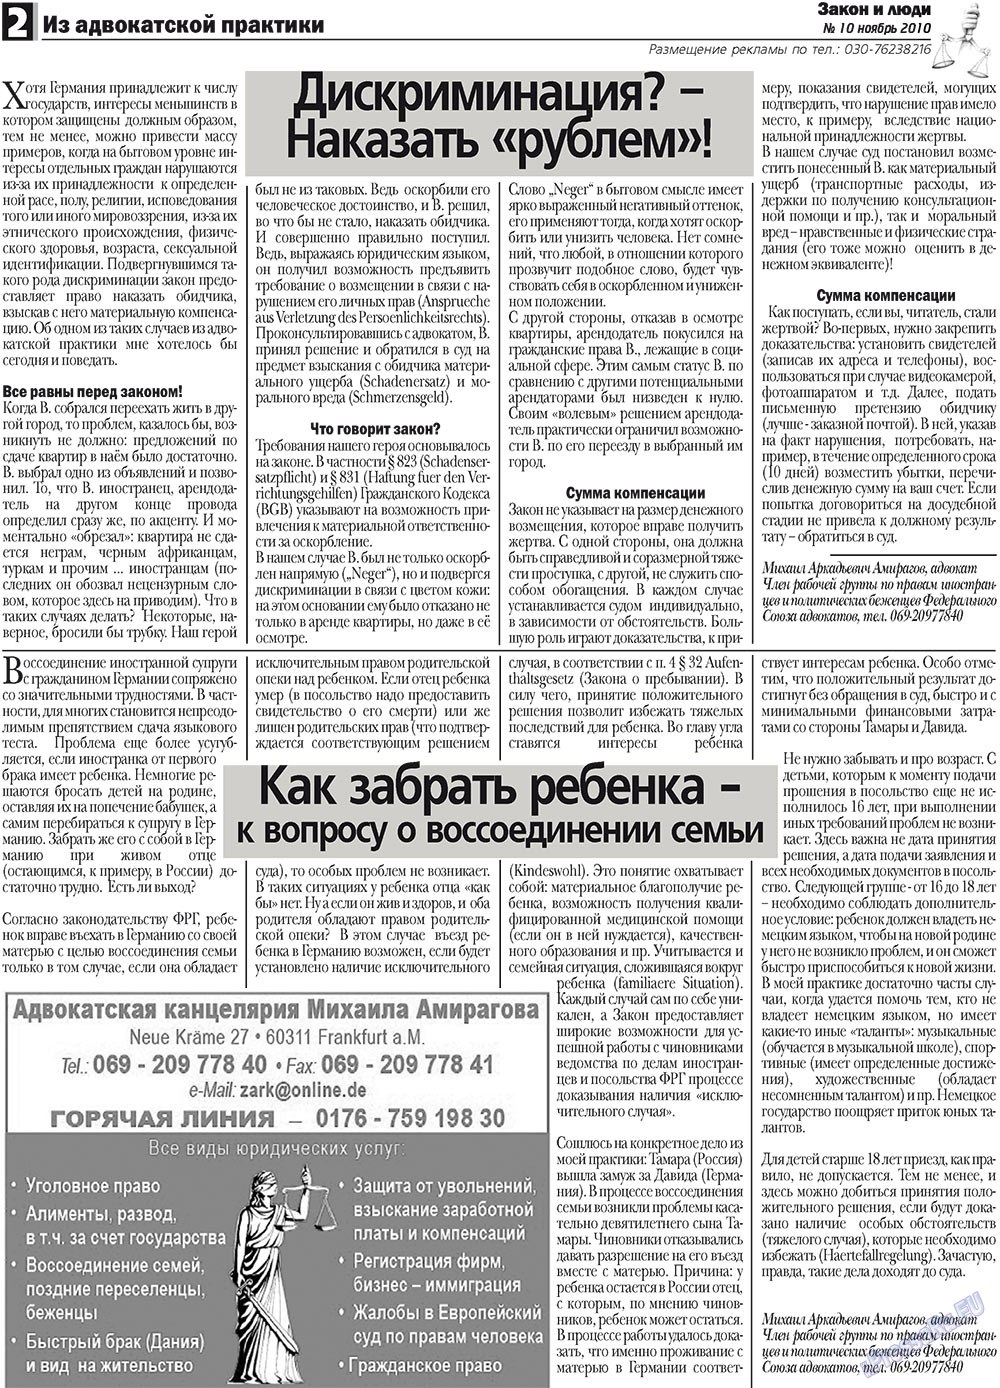 Закон и люди, газета. 2010 №10 стр.2